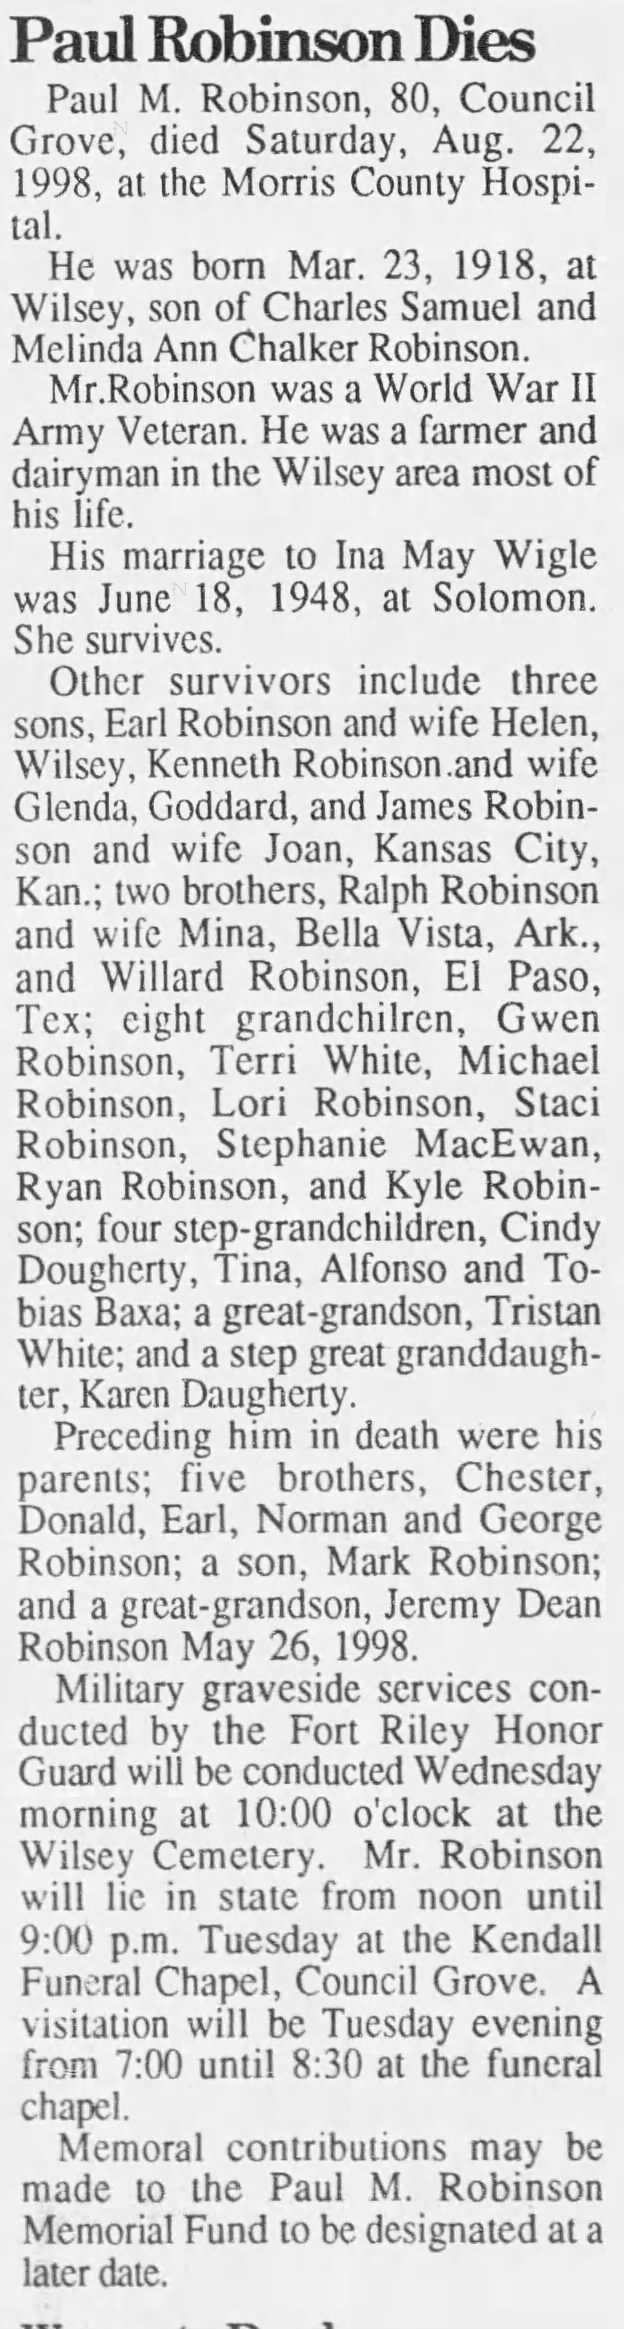 Obituary: Paul M. Robinson, 1918-1998 (Aged 80)